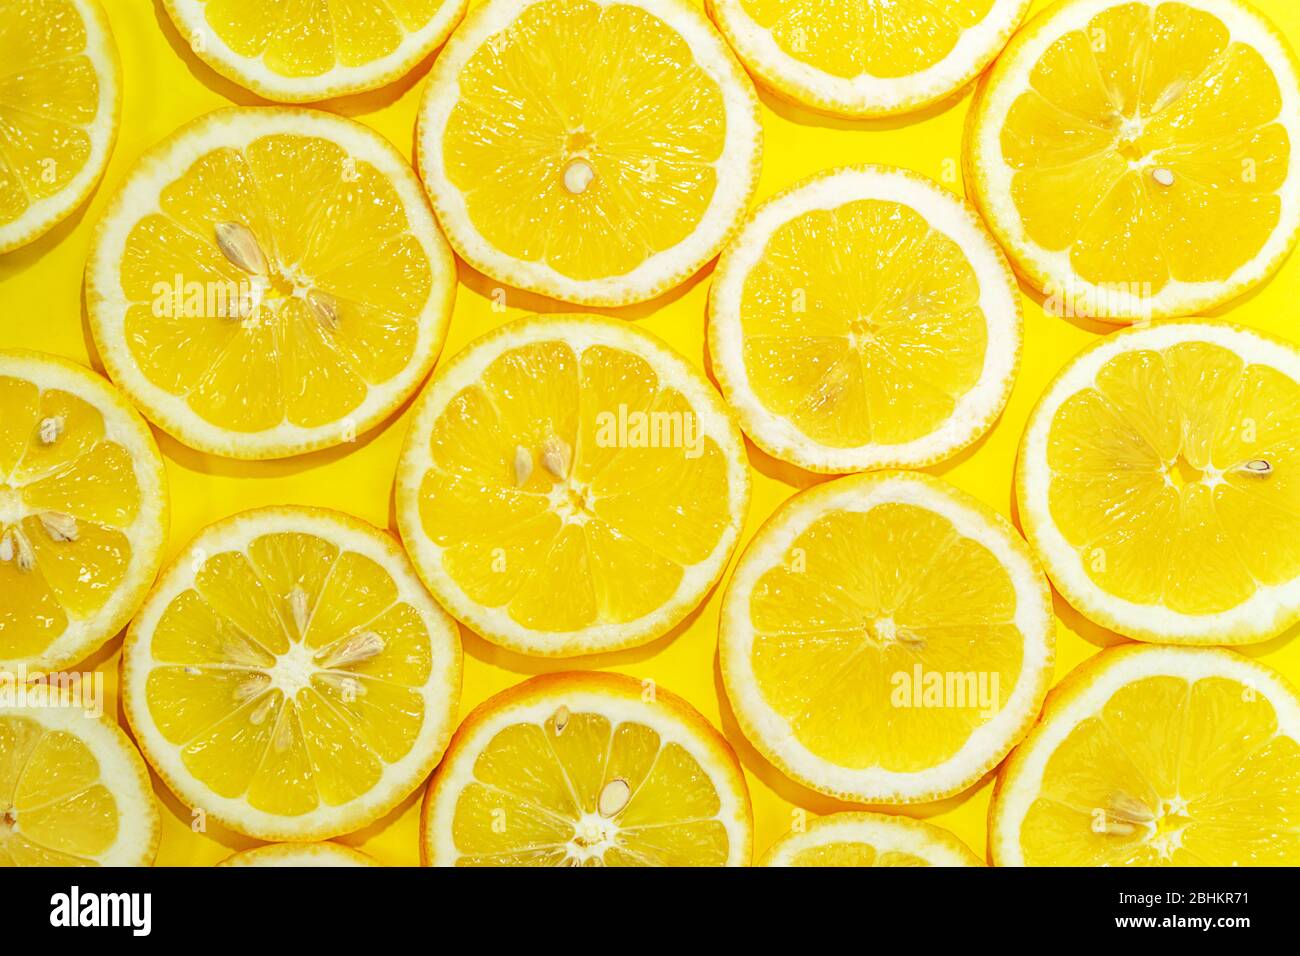 Zitrone in der Hälfte Hintergrund geschnitten. Ein Stück frische gelbe Zitrone Muster. Zitronenstücke in verschiedenen Größen. Stockfoto